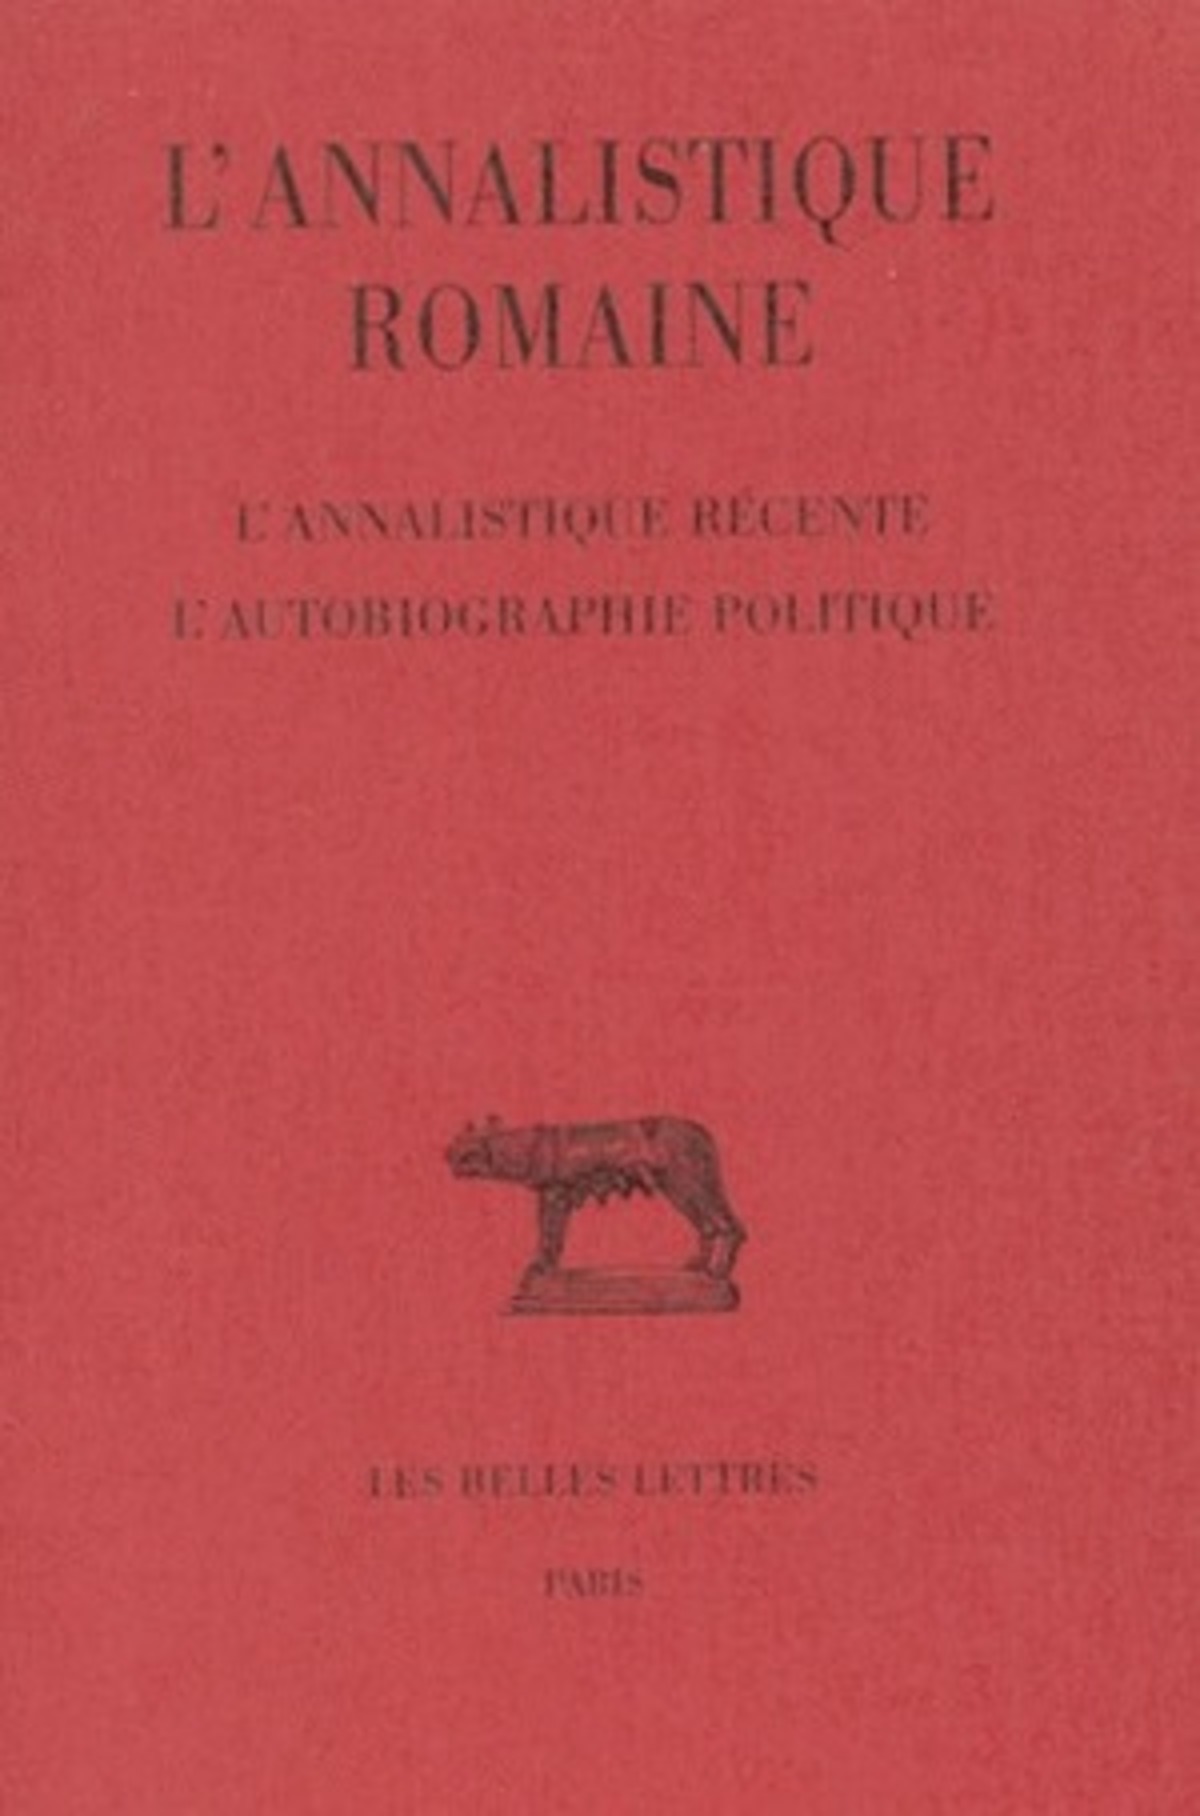 L'Annalistique romaine. Tome III : L'Annalistique récente. L'Autobiographie politique (Fragments)